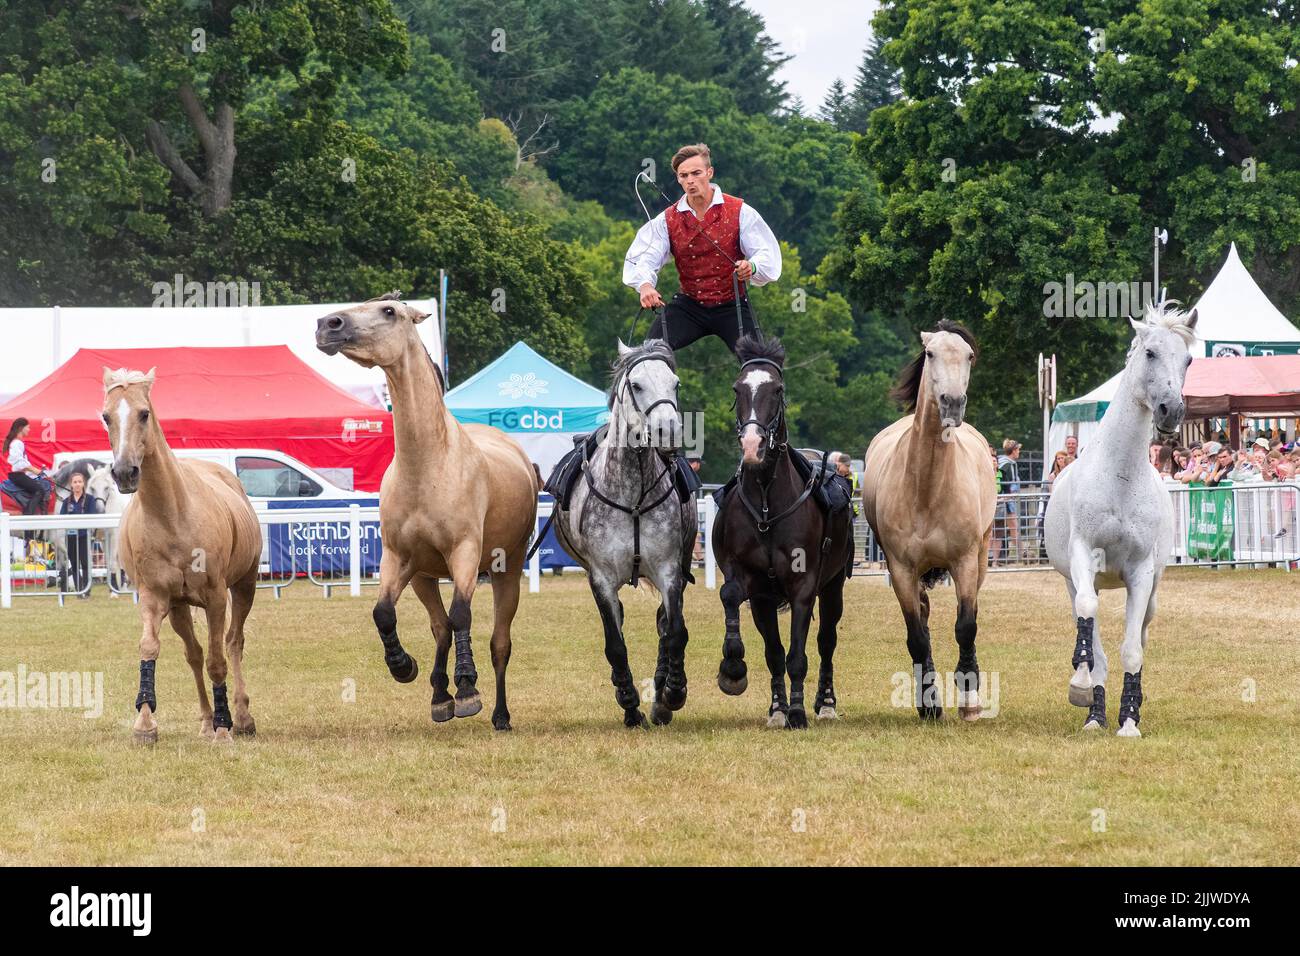 New Forest and Hampshire County Show en juillet 2022, Angleterre, Royaume-Uni. Ben Atkinson d'Atkinson action chevaux équitation romaine avec une équipe de chevaux Banque D'Images